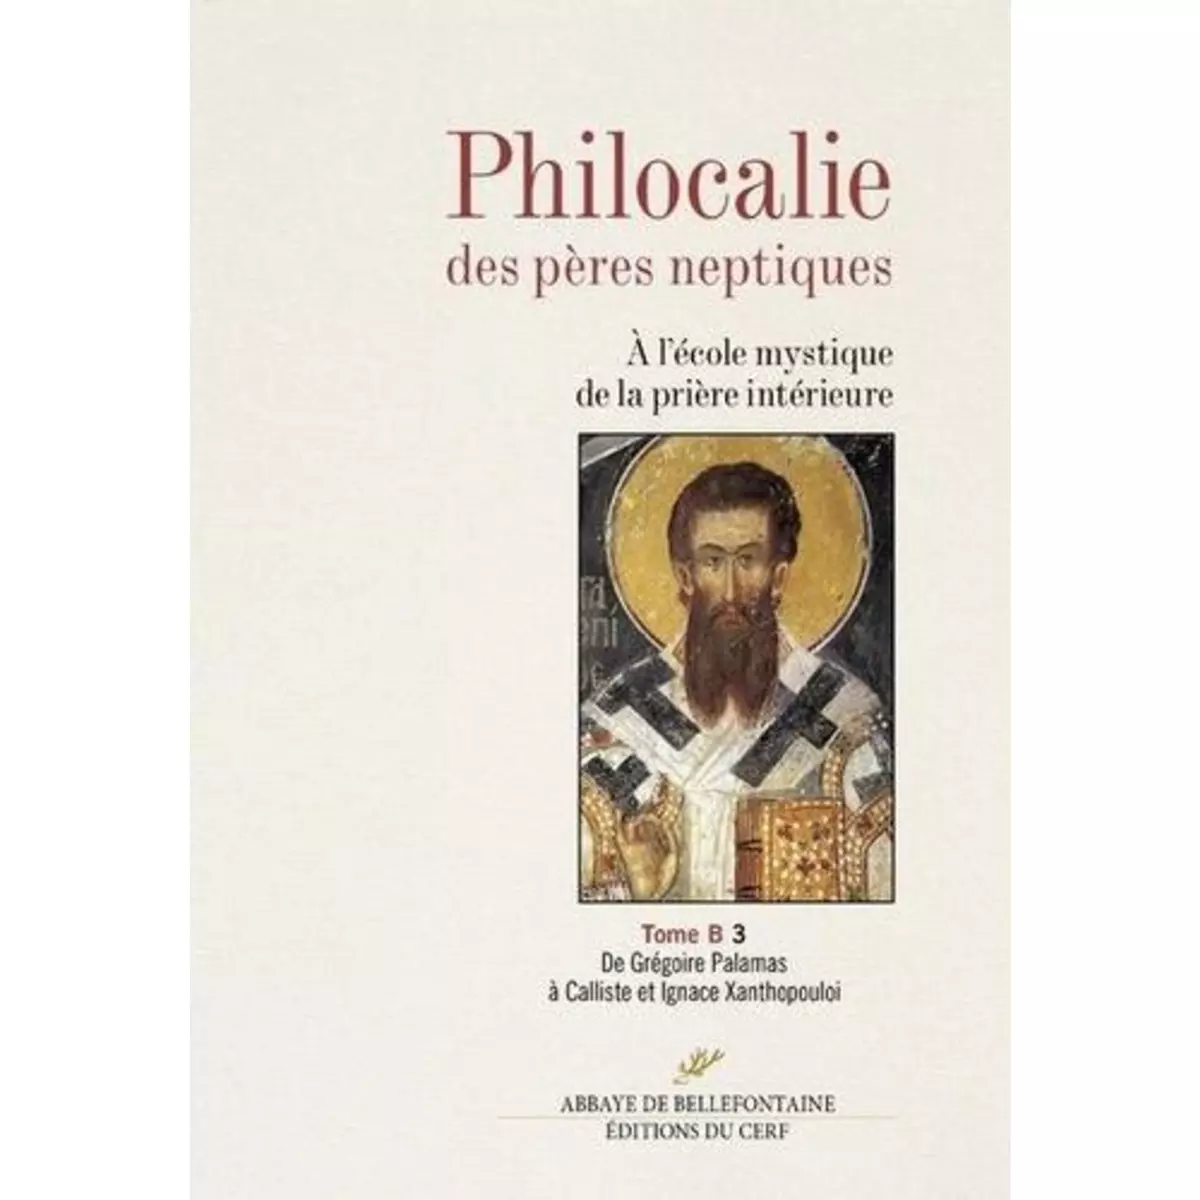  PHILOCALIE DES PERES NEPTIQUES. TOME B VOLUME 3, DE GREGOIRE PALAMAS A CALLISTE ET IGNACE XANTHOPOULOI, Touraille Jacques